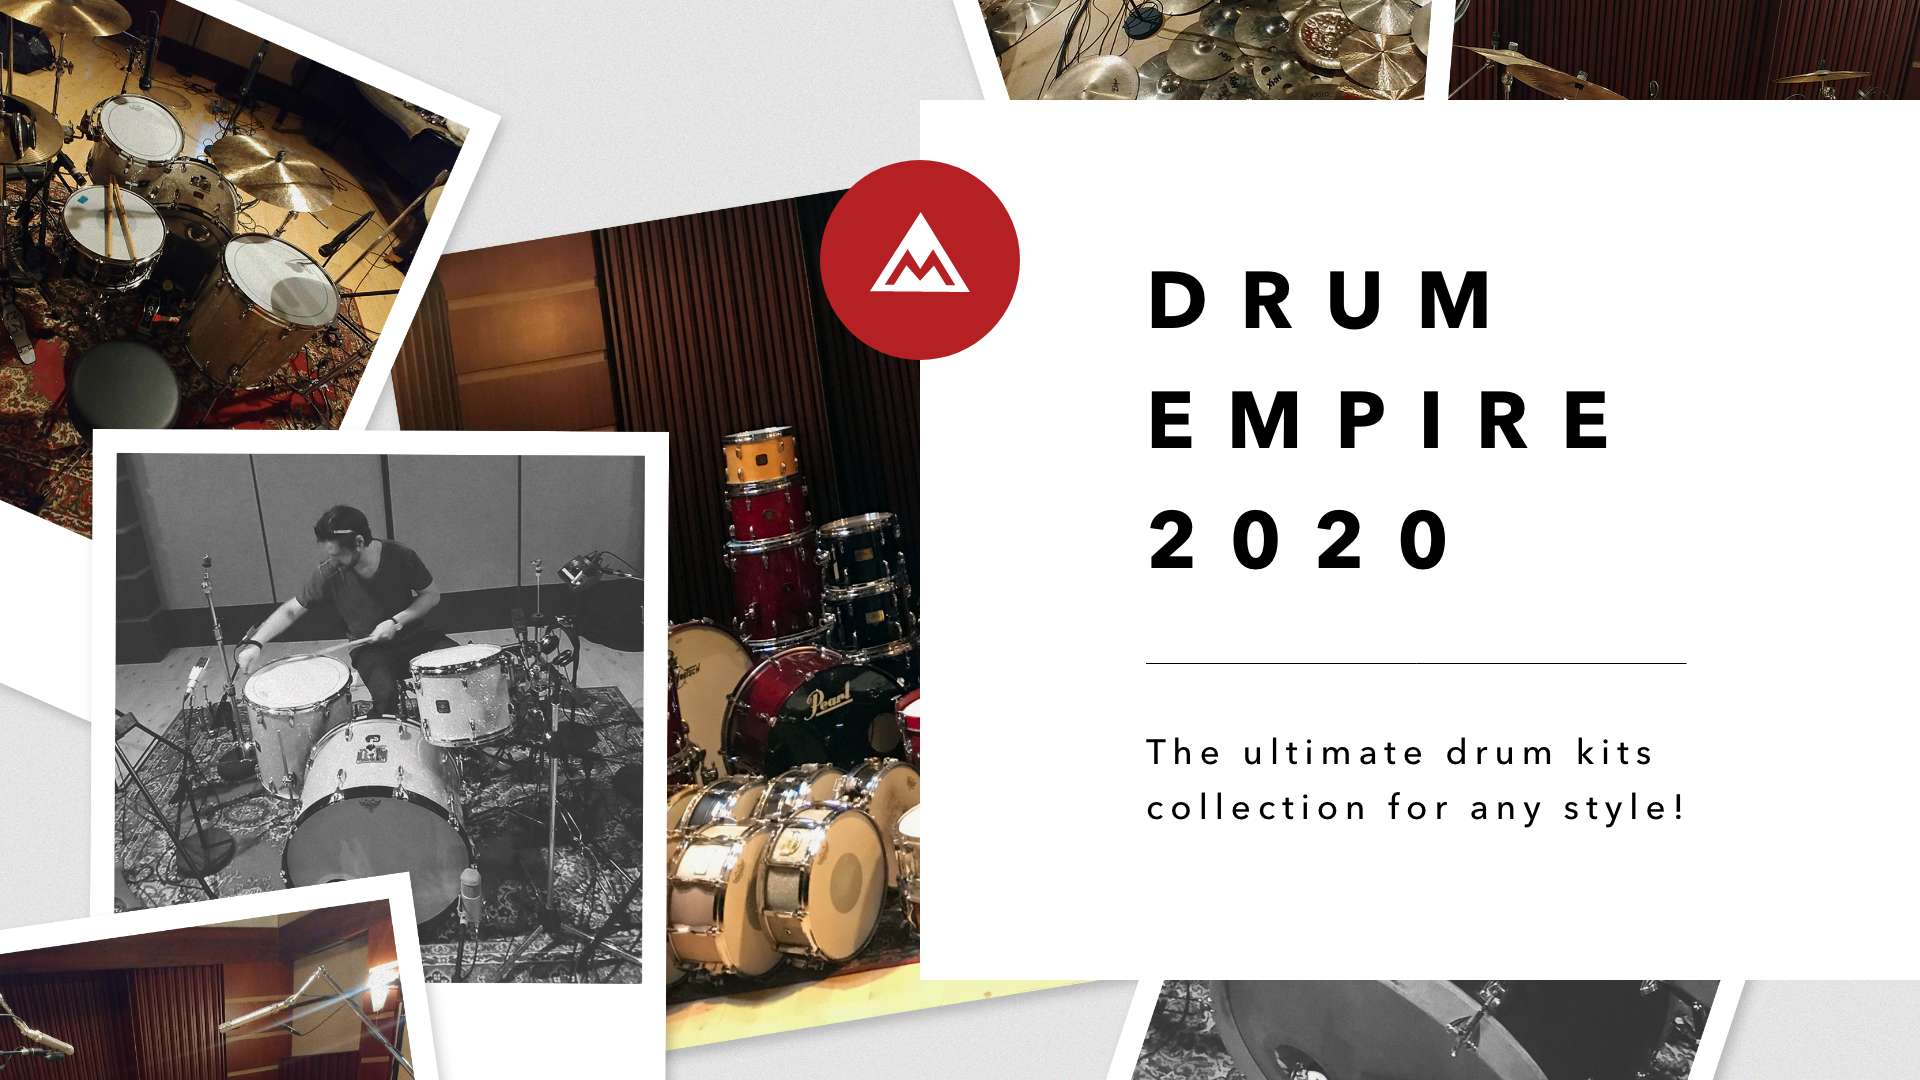 Drum Empire 2020 image